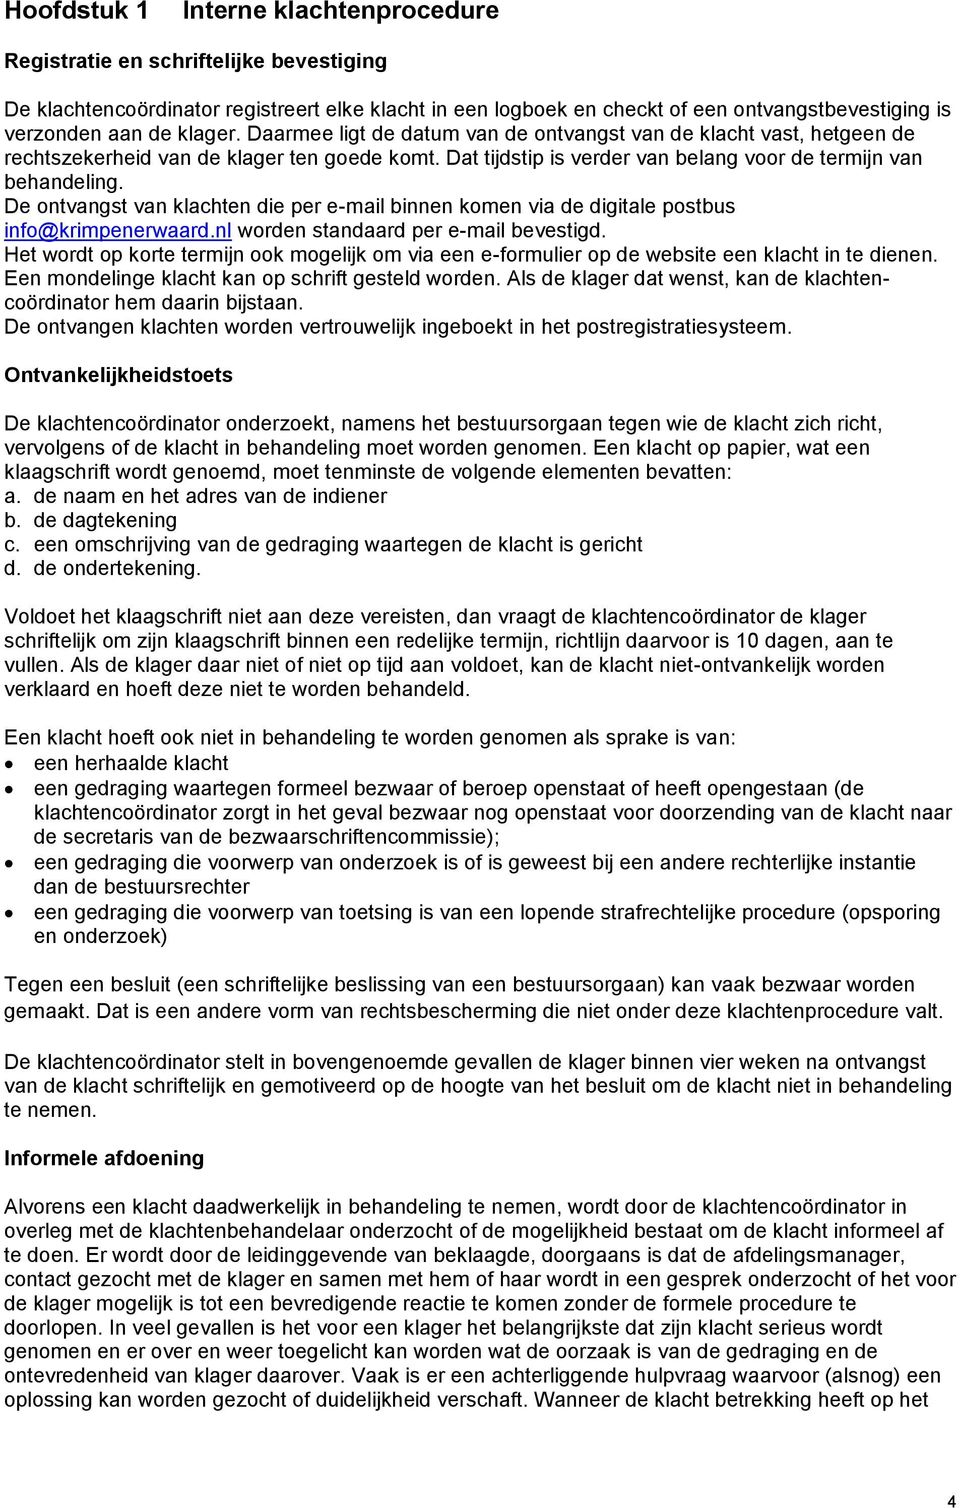 De ontvangst van klachten die per e-mail binnen komen via de digitale postbus info@krimpenerwaard.nl worden standaard per e-mail bevestigd.